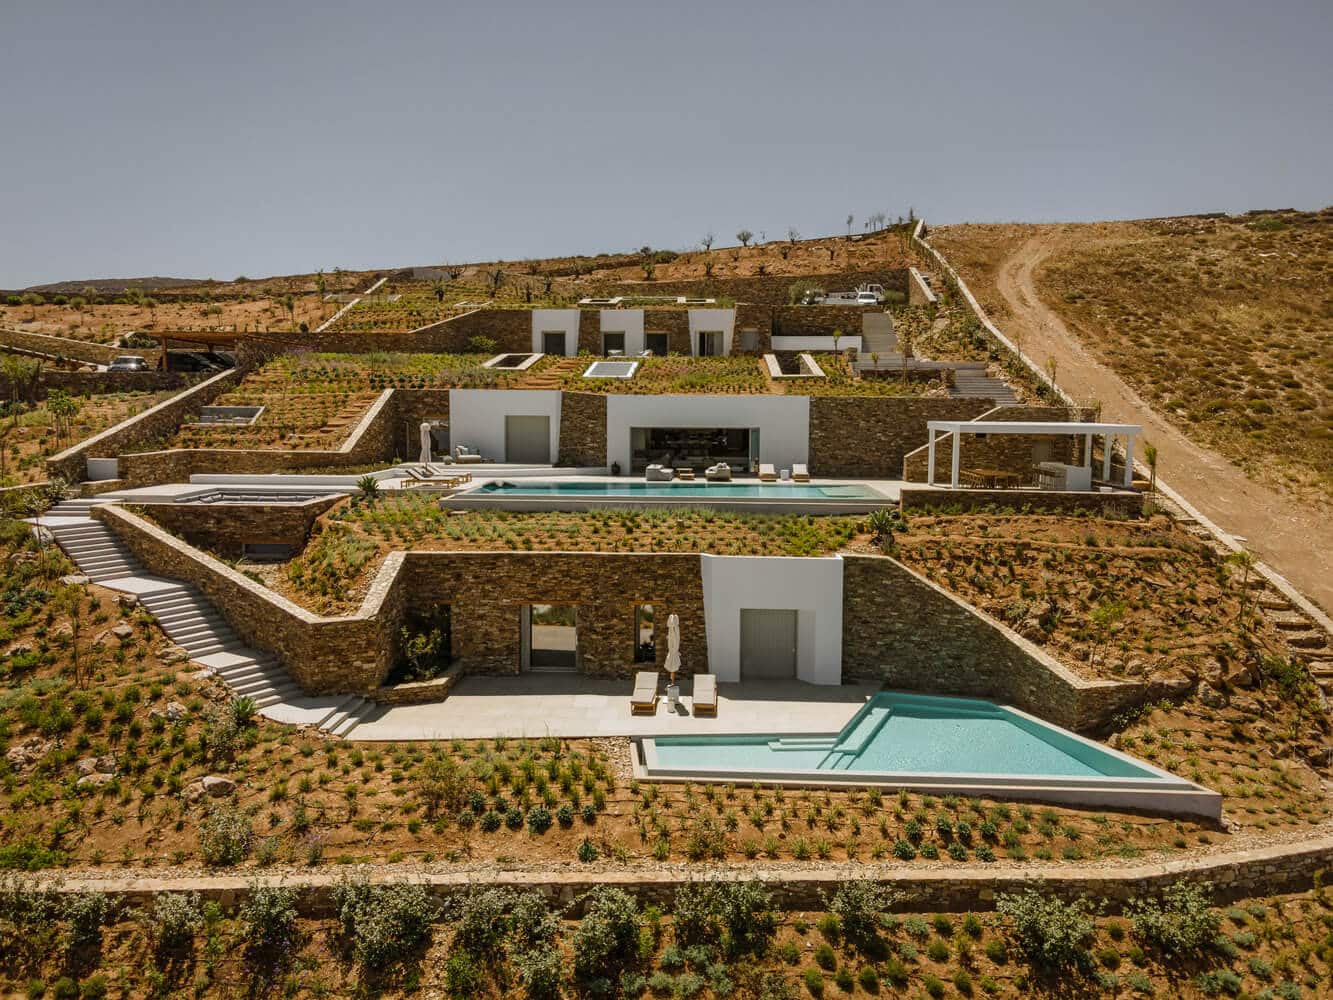 Čudovita sredozemska vila, ki se spaja z grško zemljo